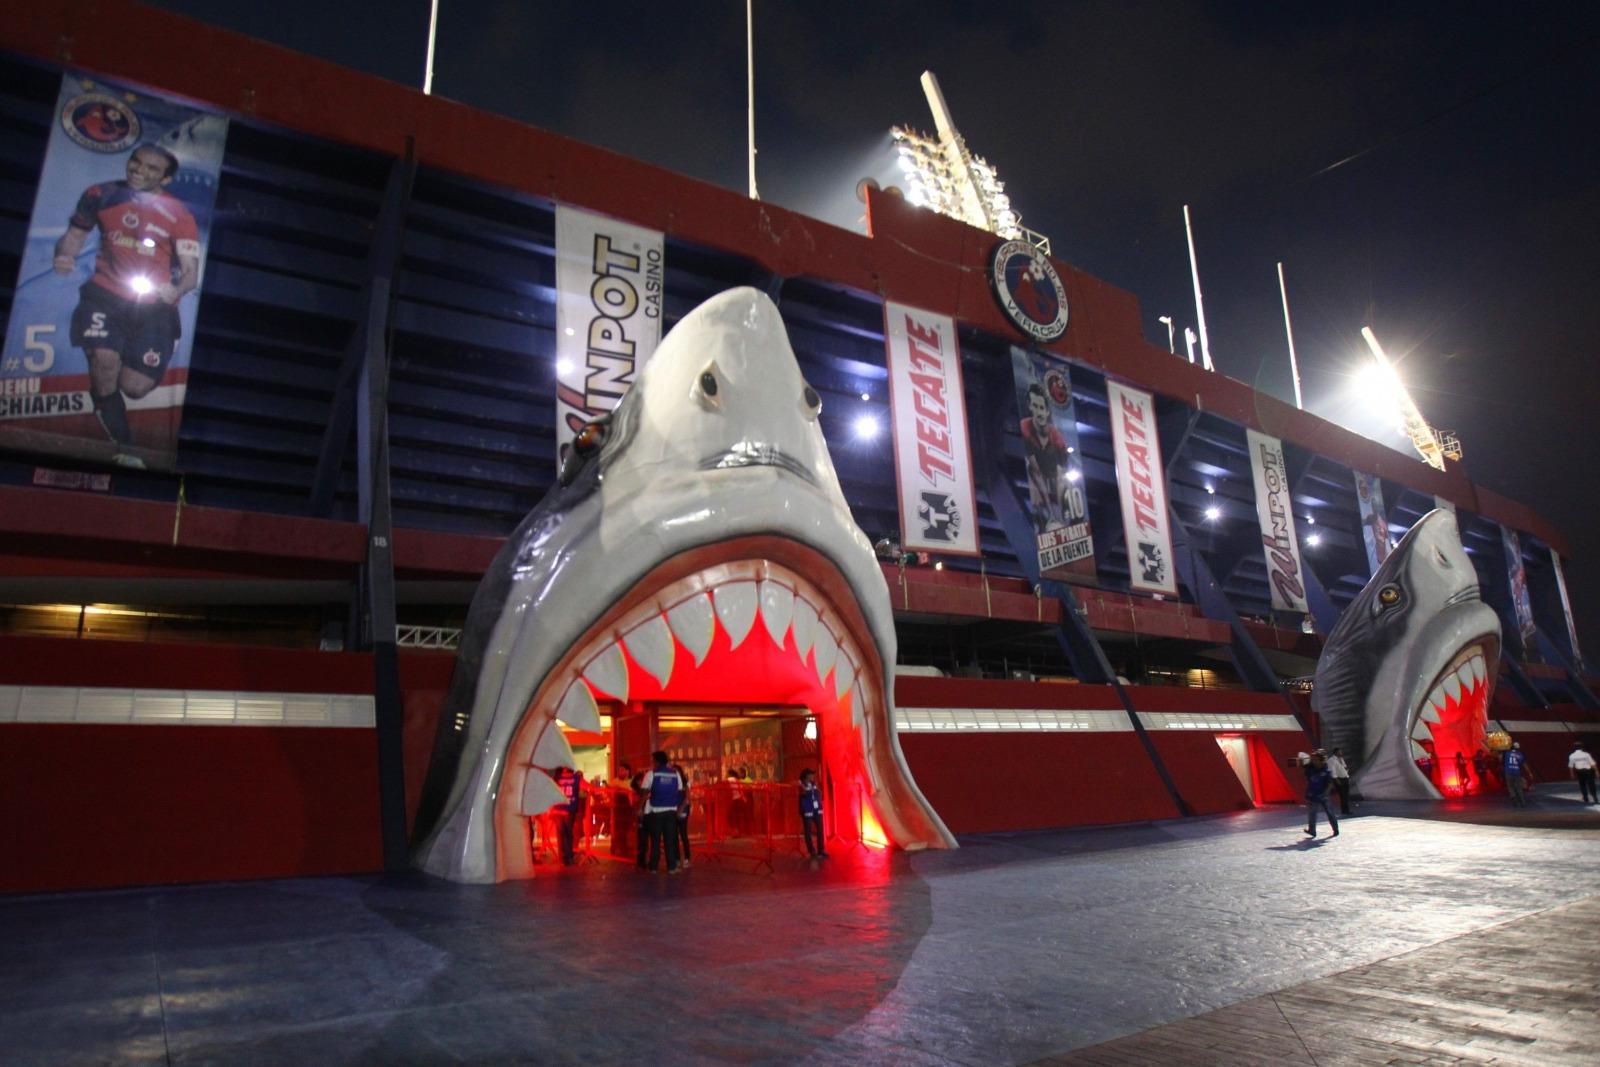 Cabezas de tiburón del Pirata Fuente pasarán al Aquarium de Veracruz